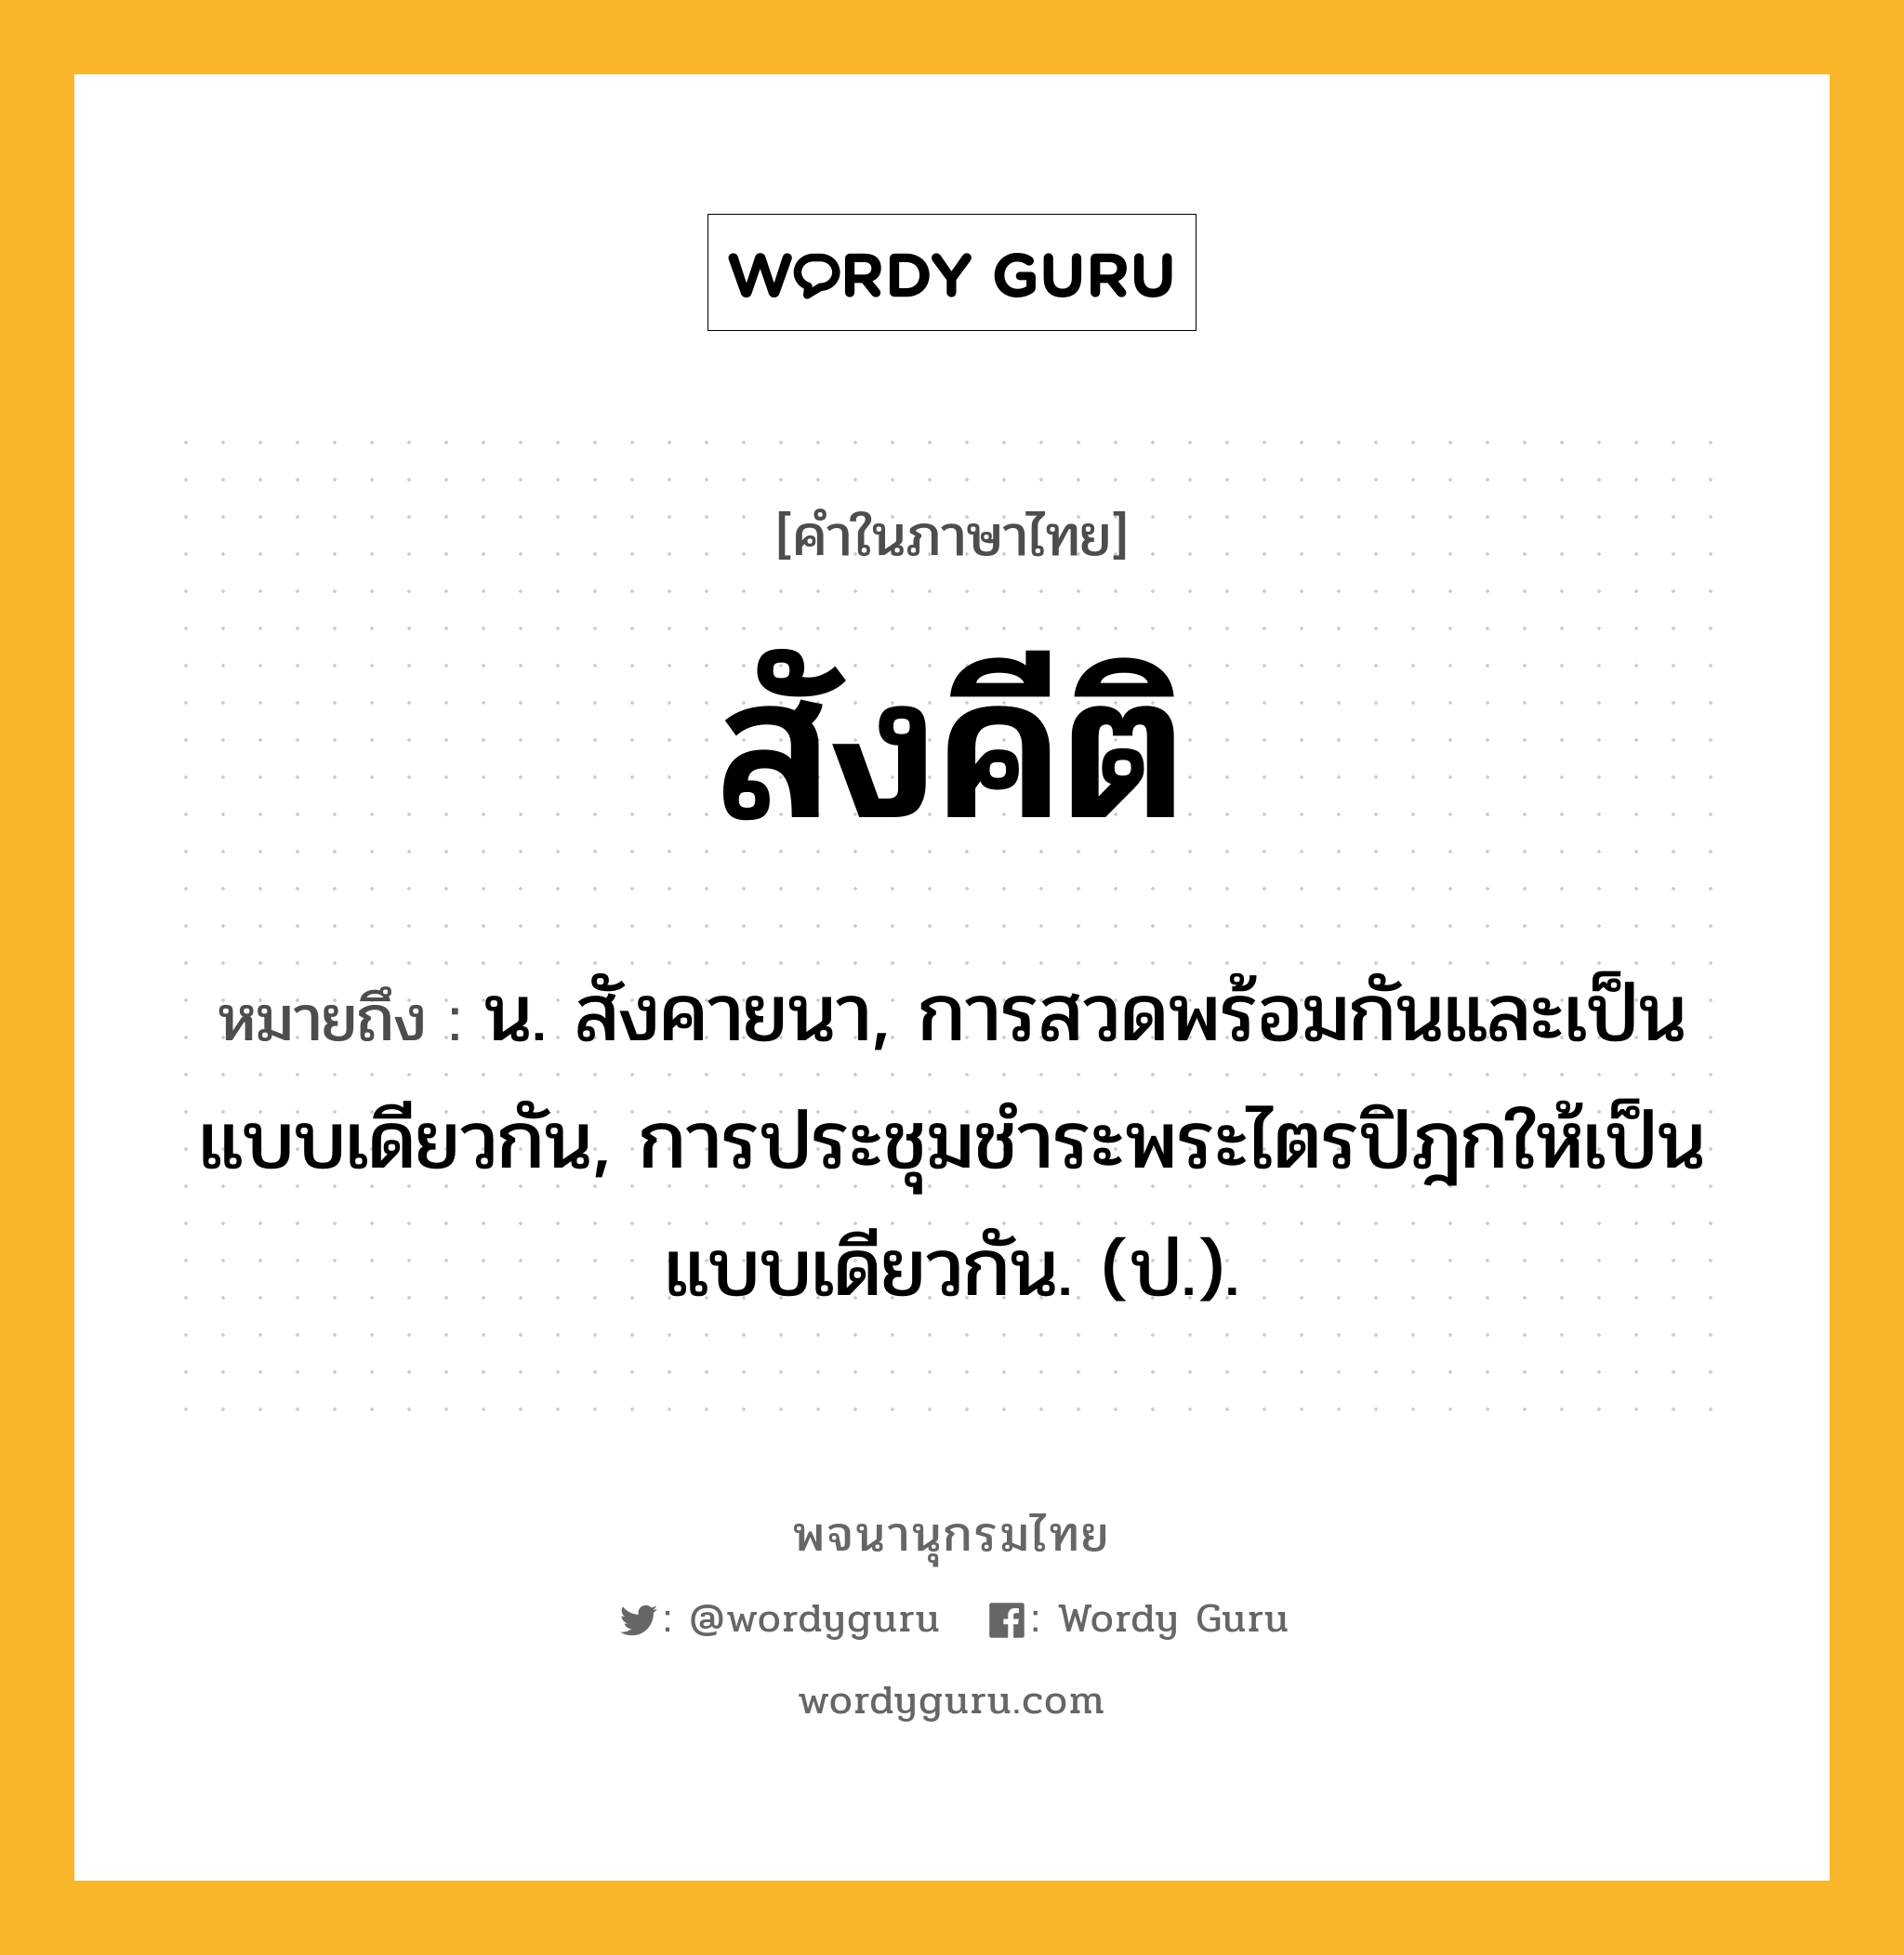 สังคีติ ความหมาย หมายถึงอะไร?, คำในภาษาไทย สังคีติ หมายถึง น. สังคายนา, การสวดพร้อมกันและเป็นแบบเดียวกัน, การประชุมชําระพระไตรปิฎกให้เป็นแบบเดียวกัน. (ป.).